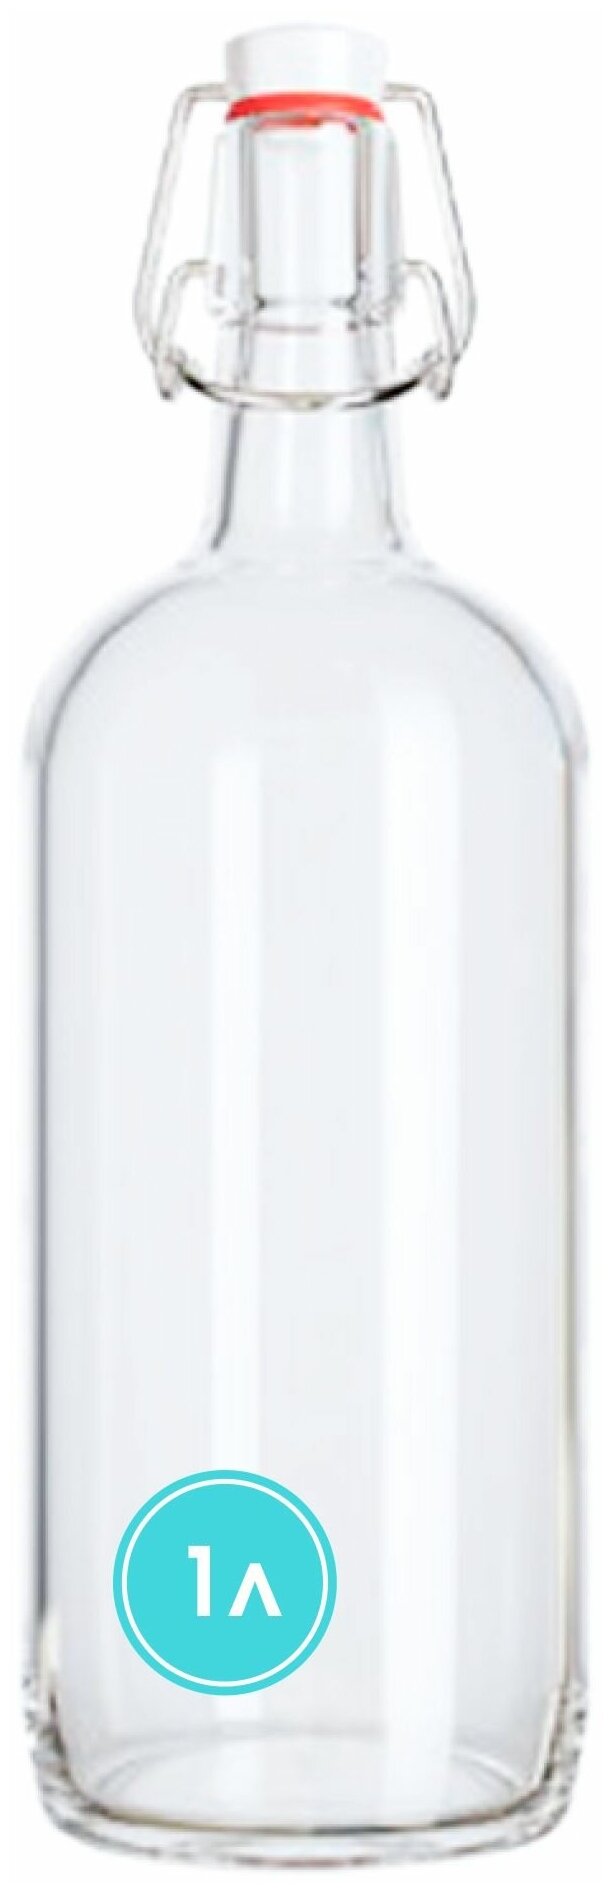 Бутылка бугельная с пробкой 1 литр, комплект 3шт, светлое стекло / Для масла / Для вина / Для настоек / Для сока / Пивная бутыль. - фотография № 2